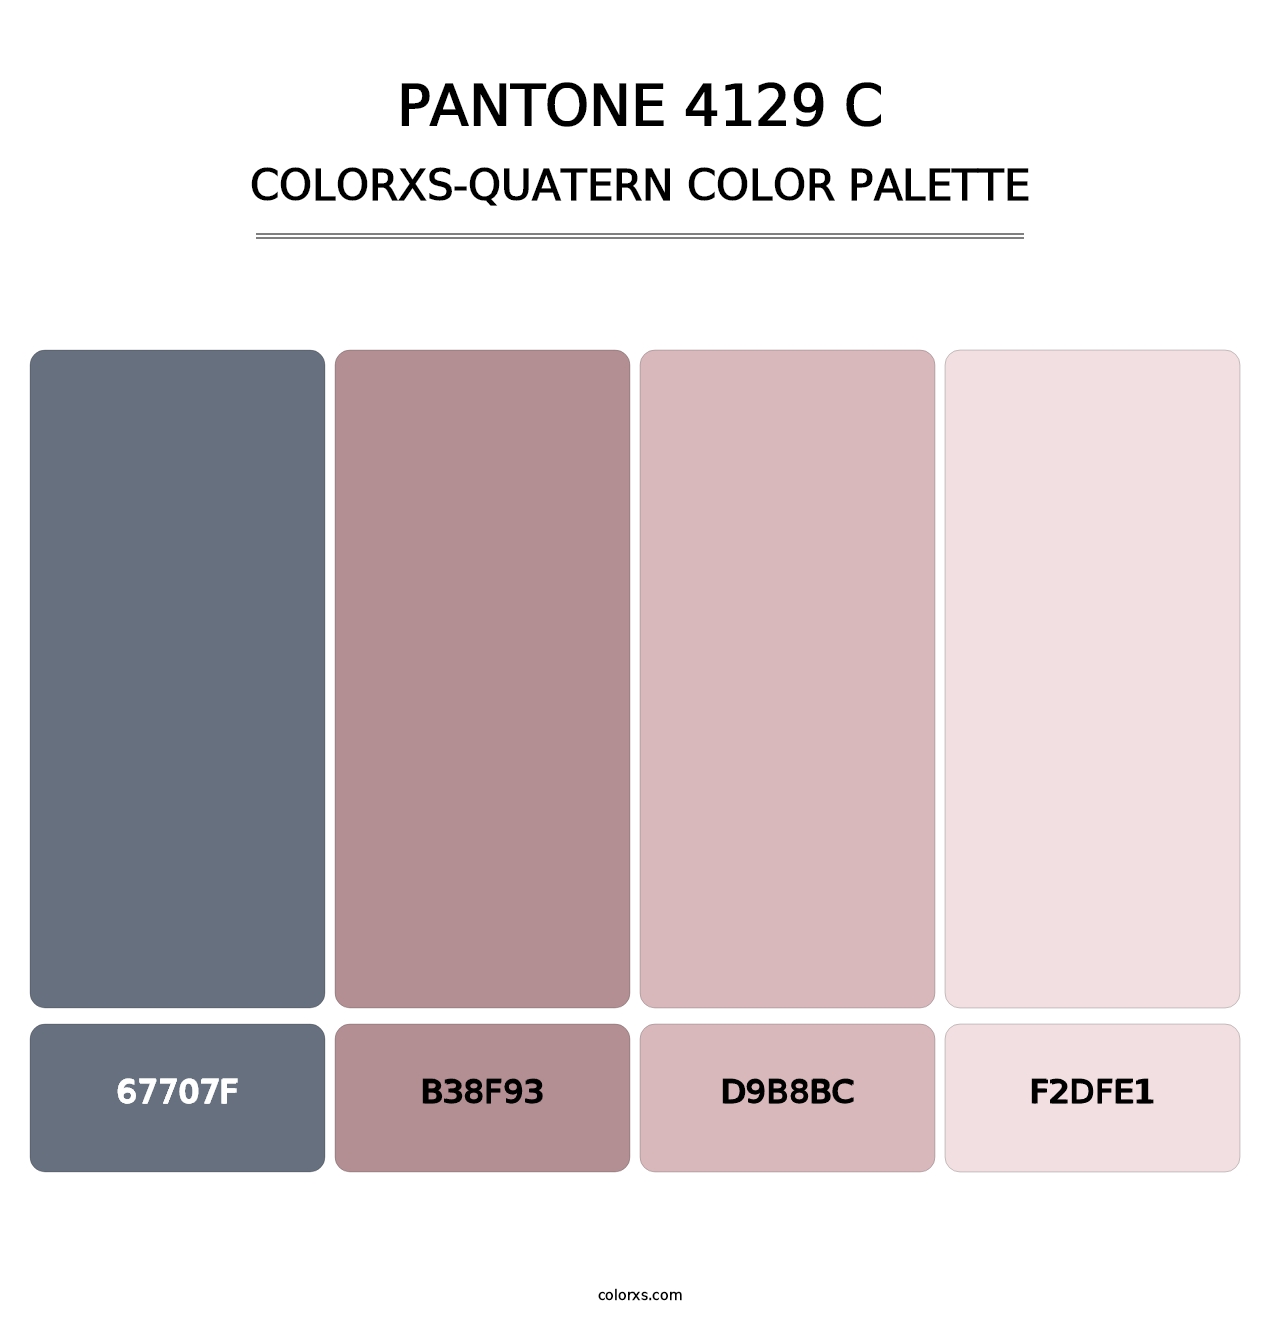 PANTONE 4129 C - Colorxs Quatern Palette